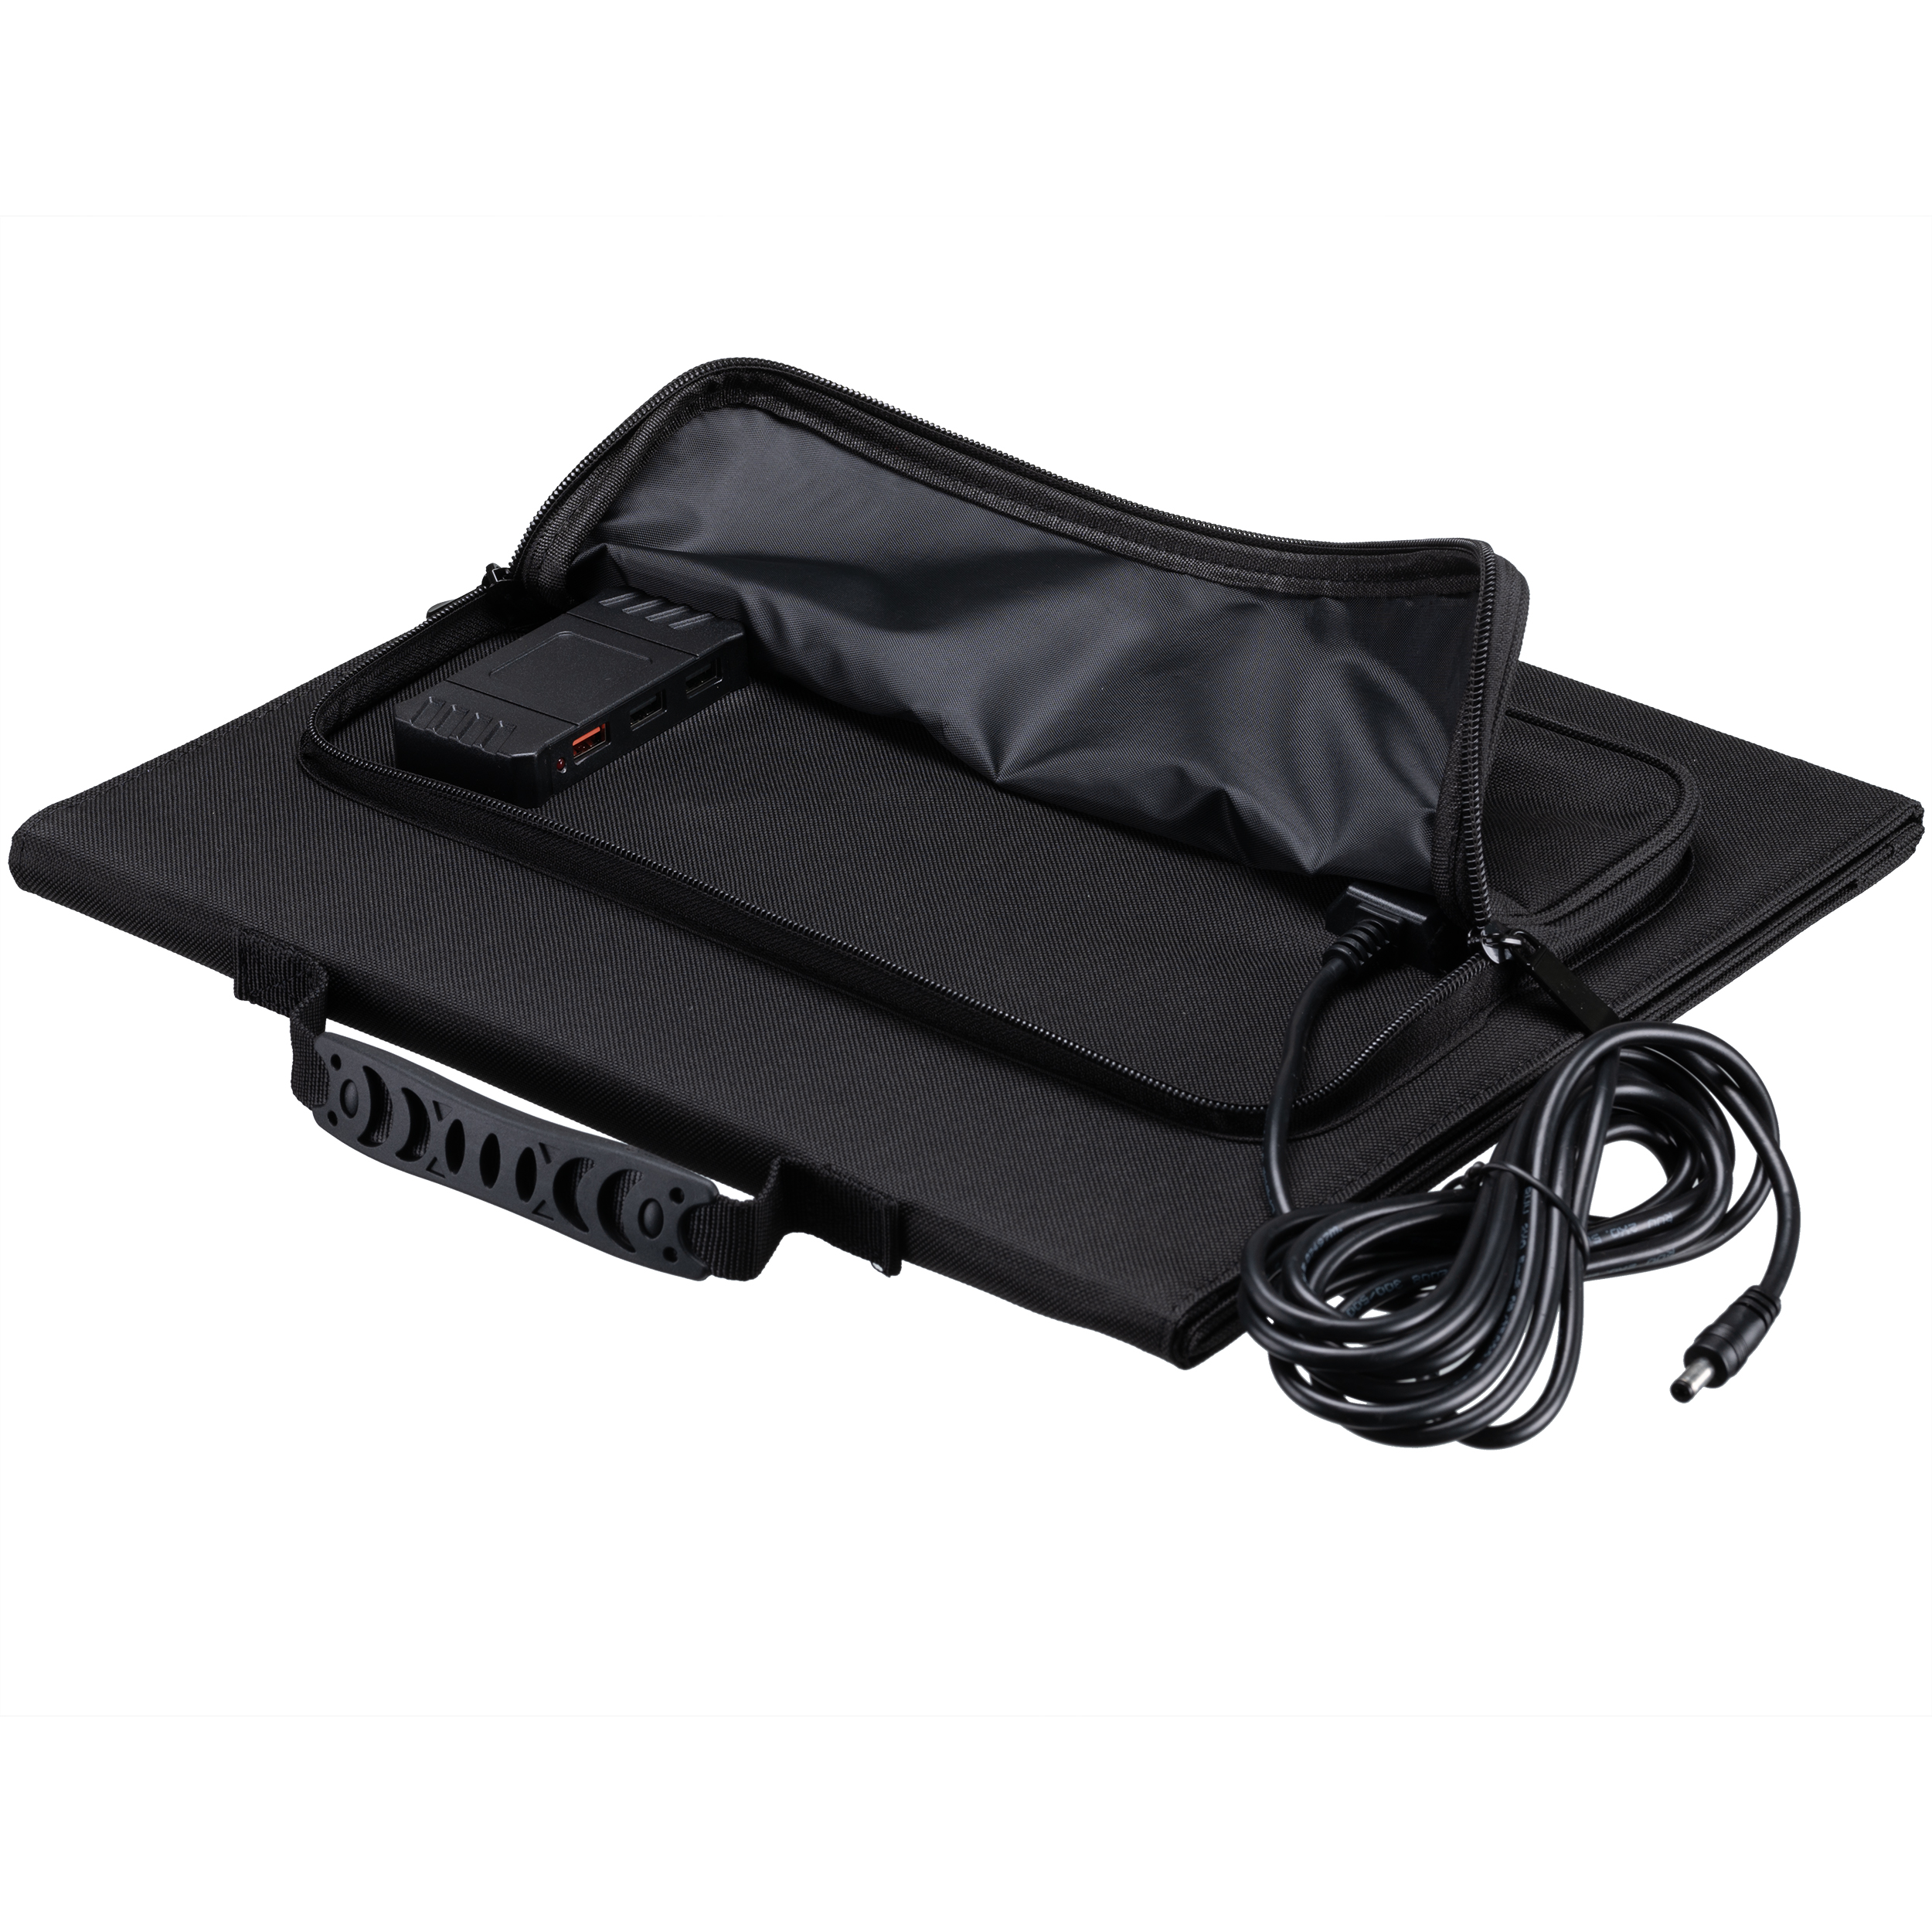 Caricabatterie solare portatile BRESSER 40 watt con alimentazione USB e CC